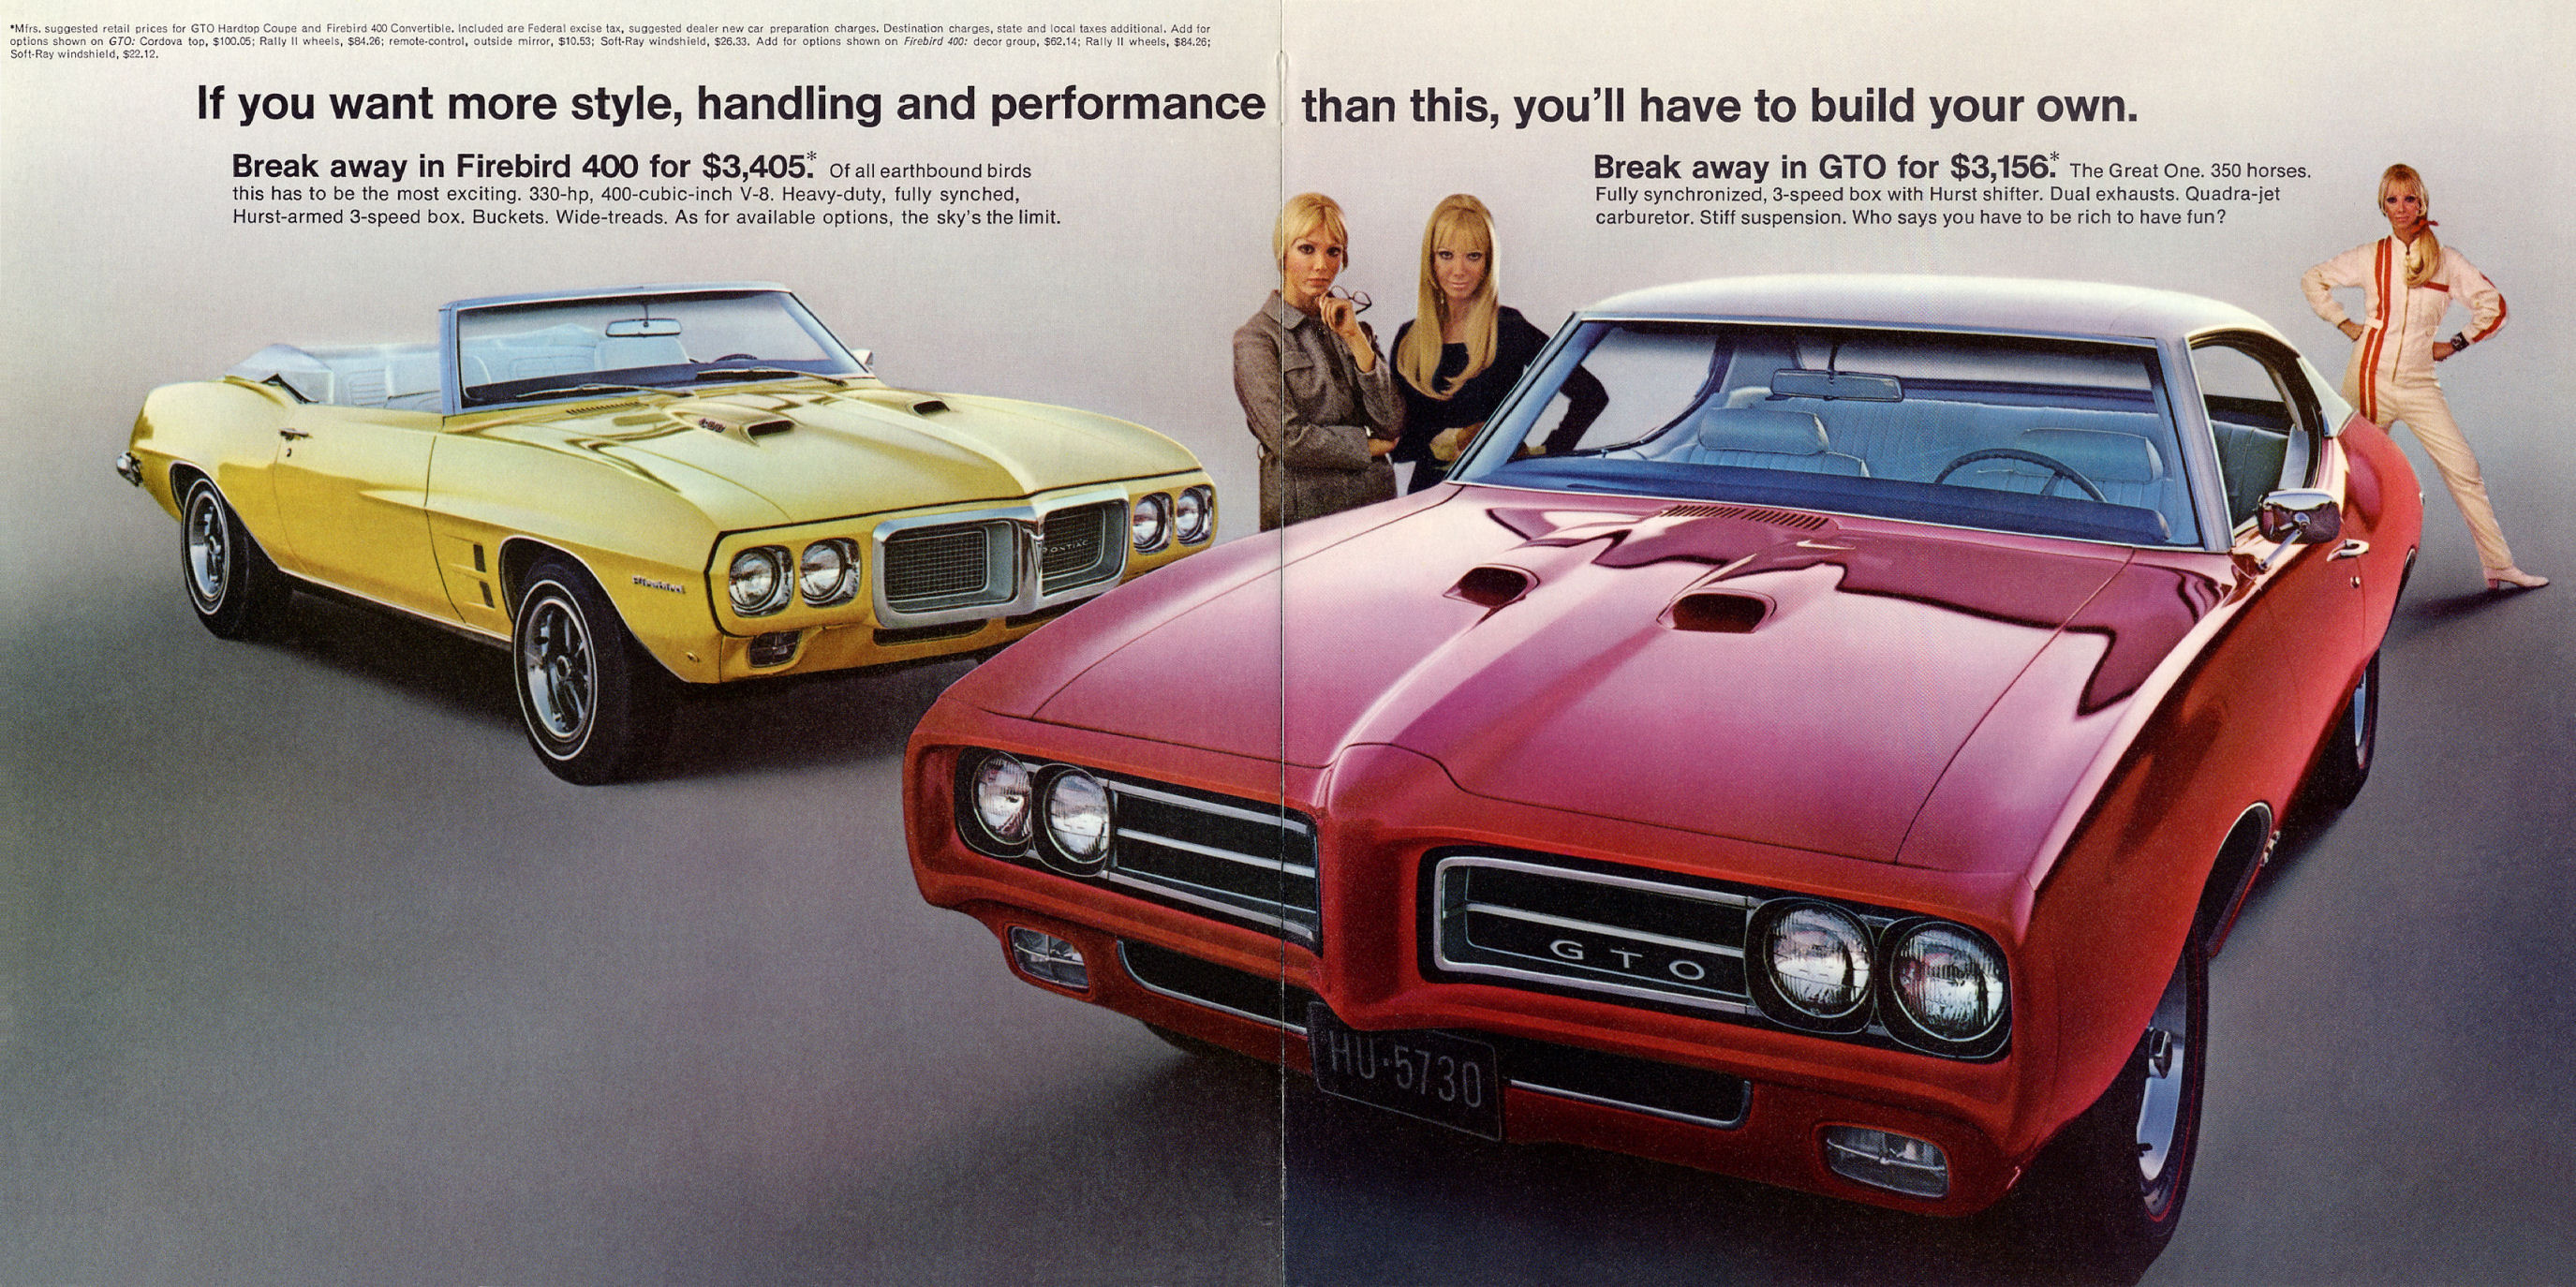 1969 Pontiac Mailer-06-07